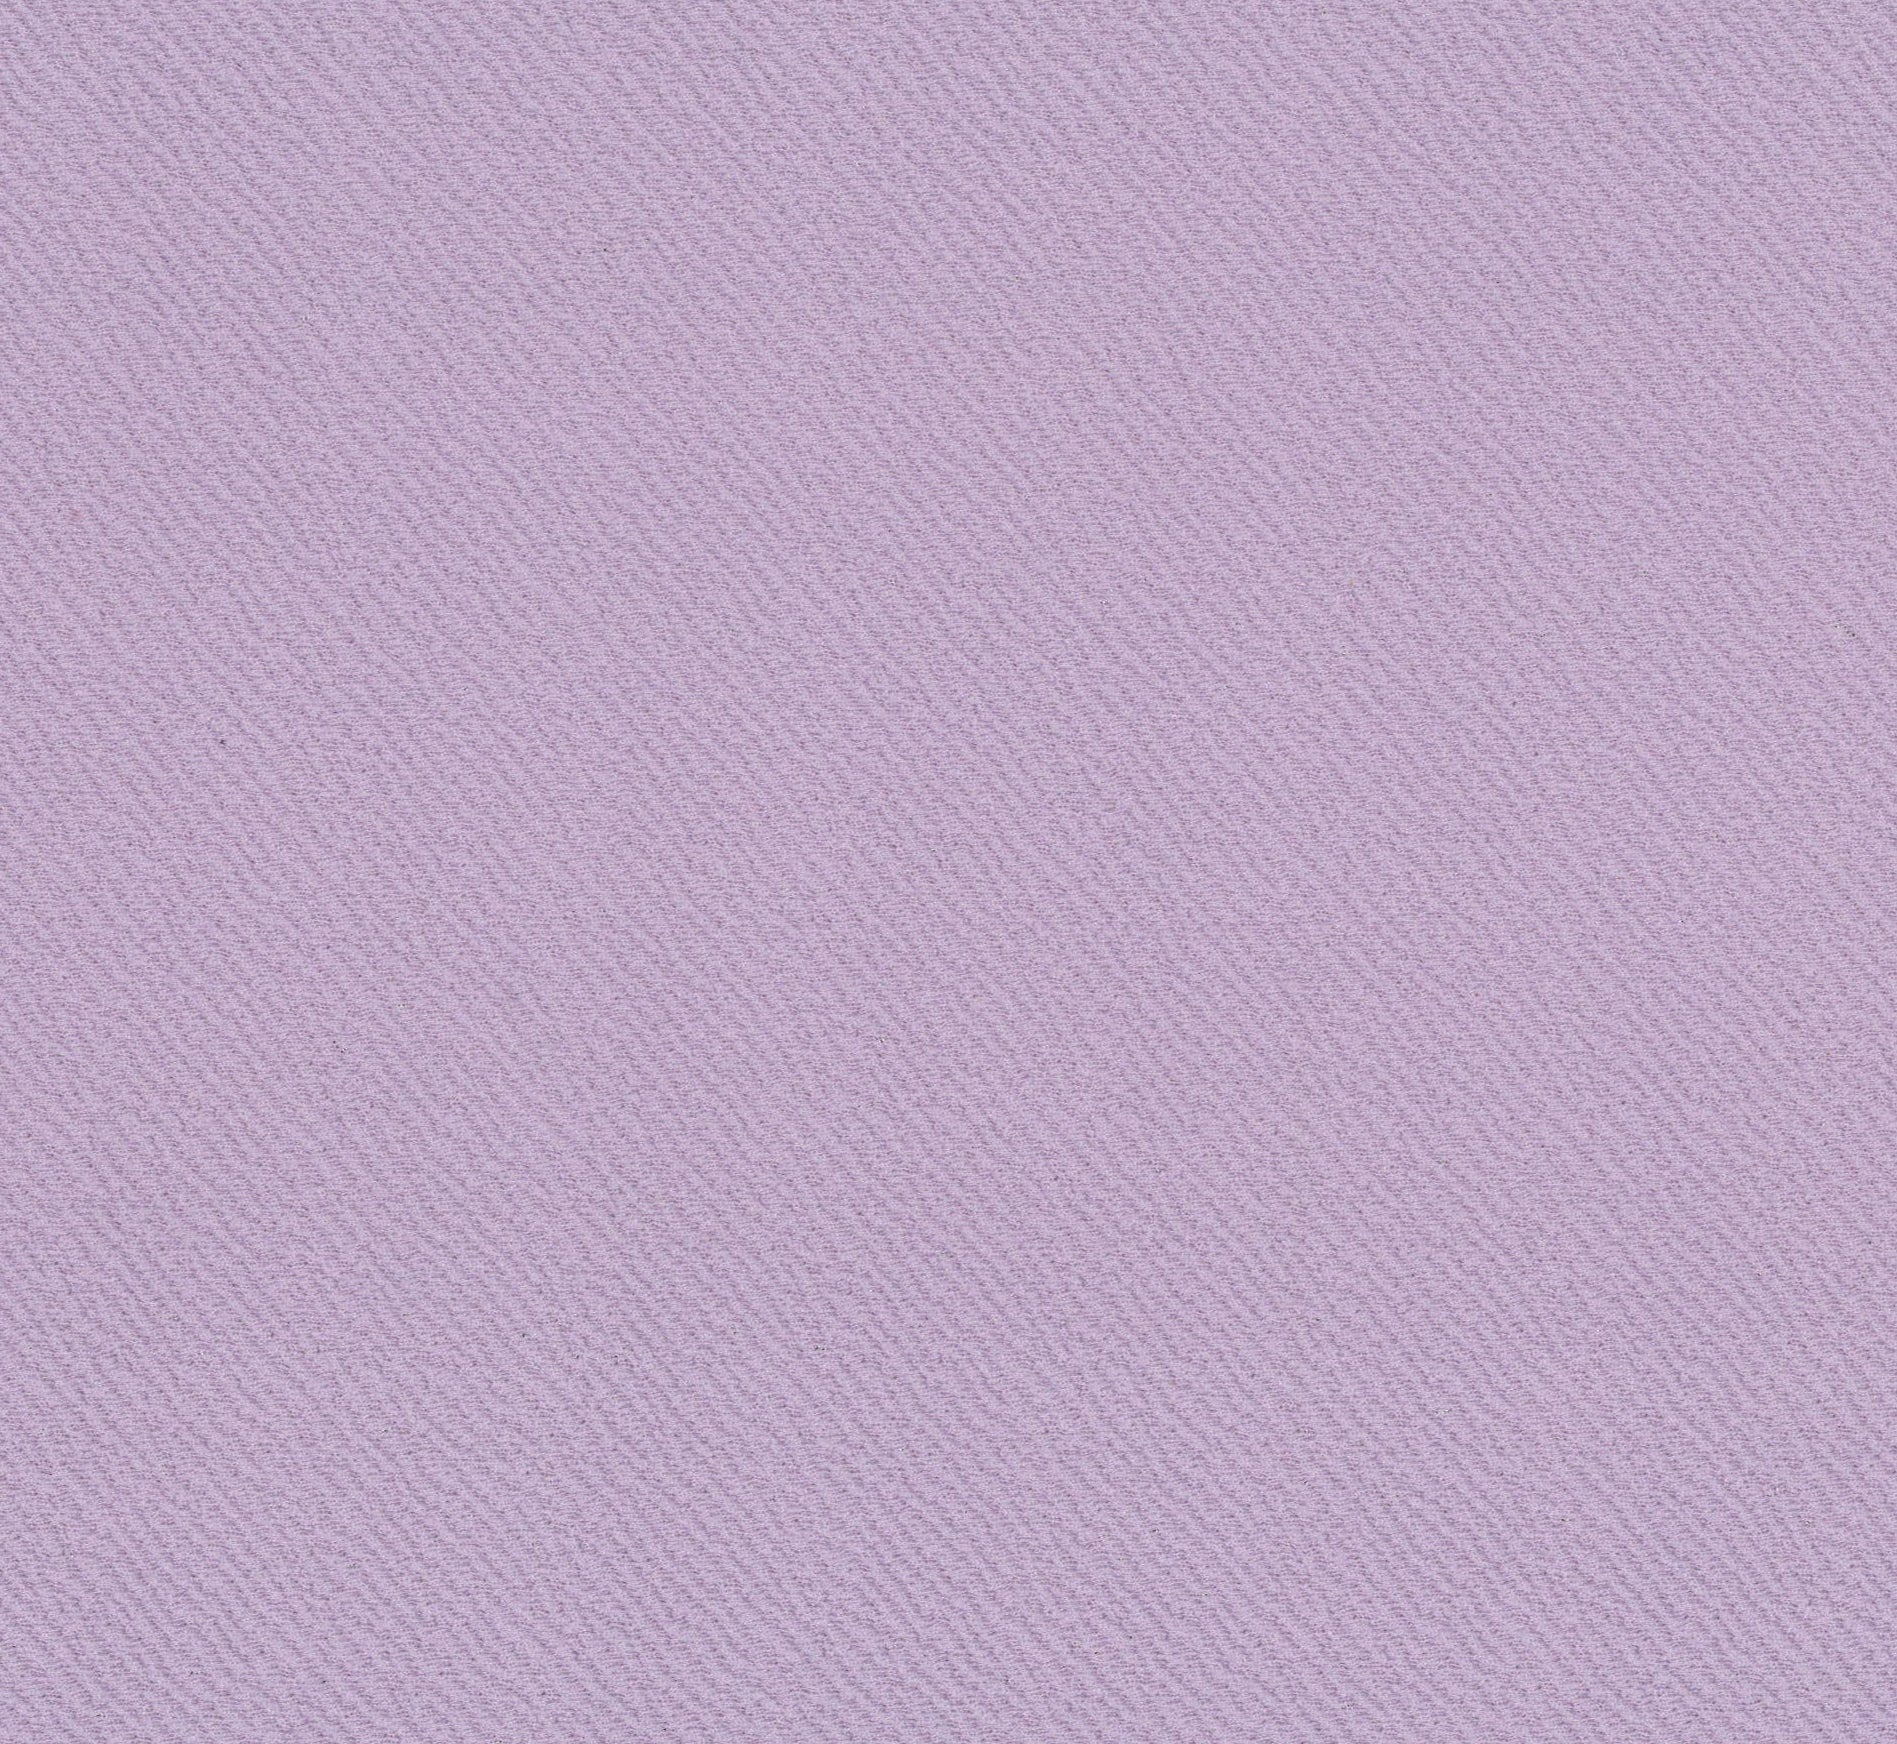 13018-13 淡粉紫 河流紋 提花 染色混紡布 